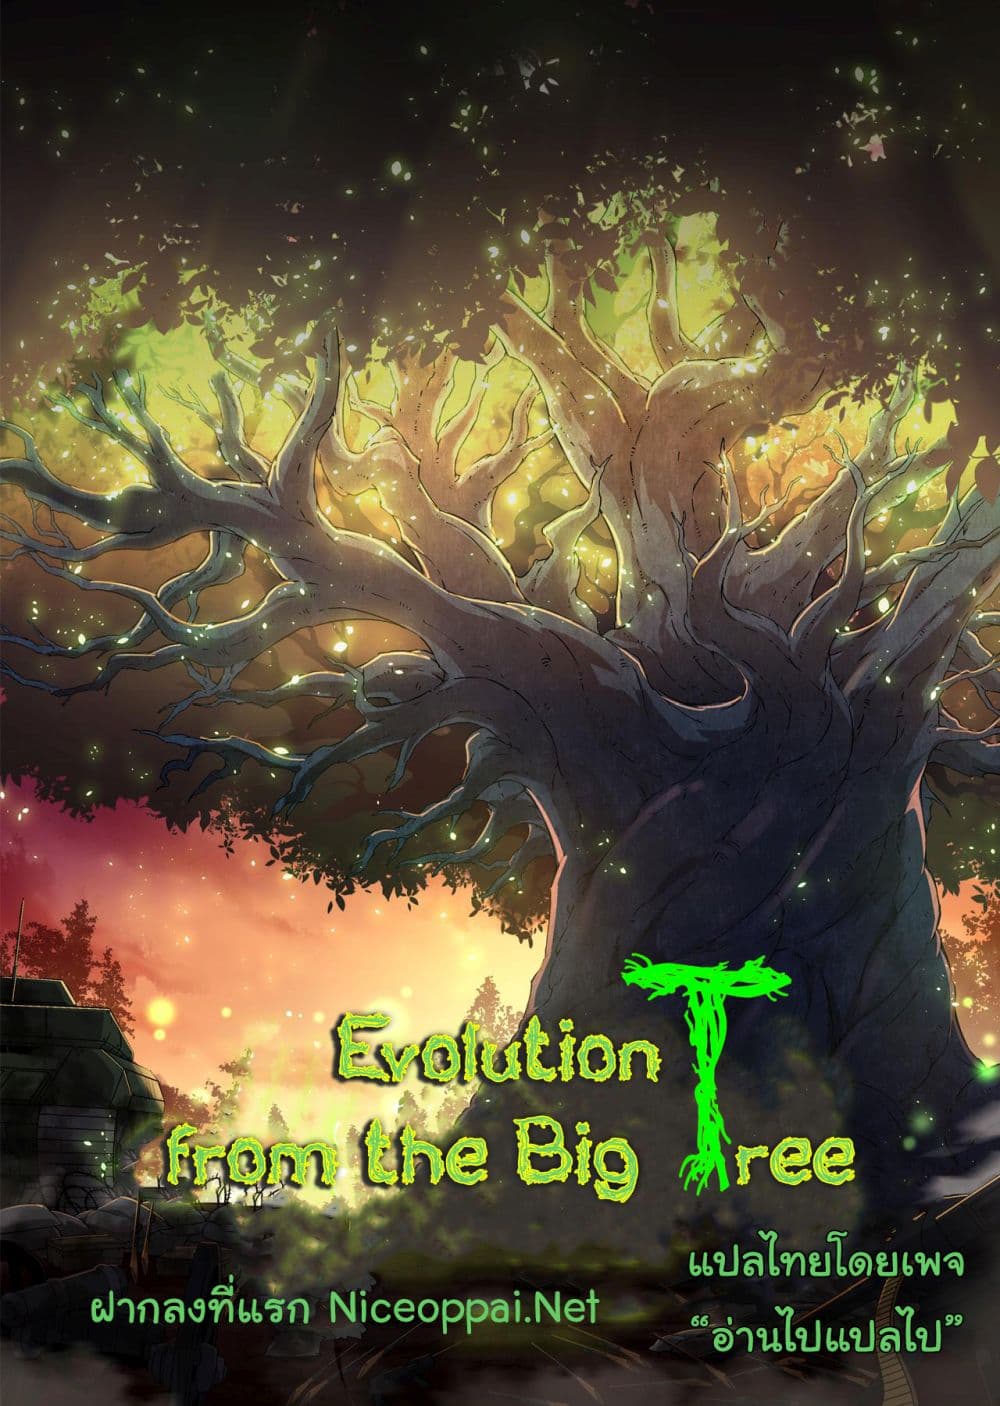 Evolution from the Big Tree Ã Â¸â€¢Ã Â¸Â­Ã Â¸â„¢Ã Â¸â€”Ã Â¸ÂµÃ Â¹Ë† 8 (61)